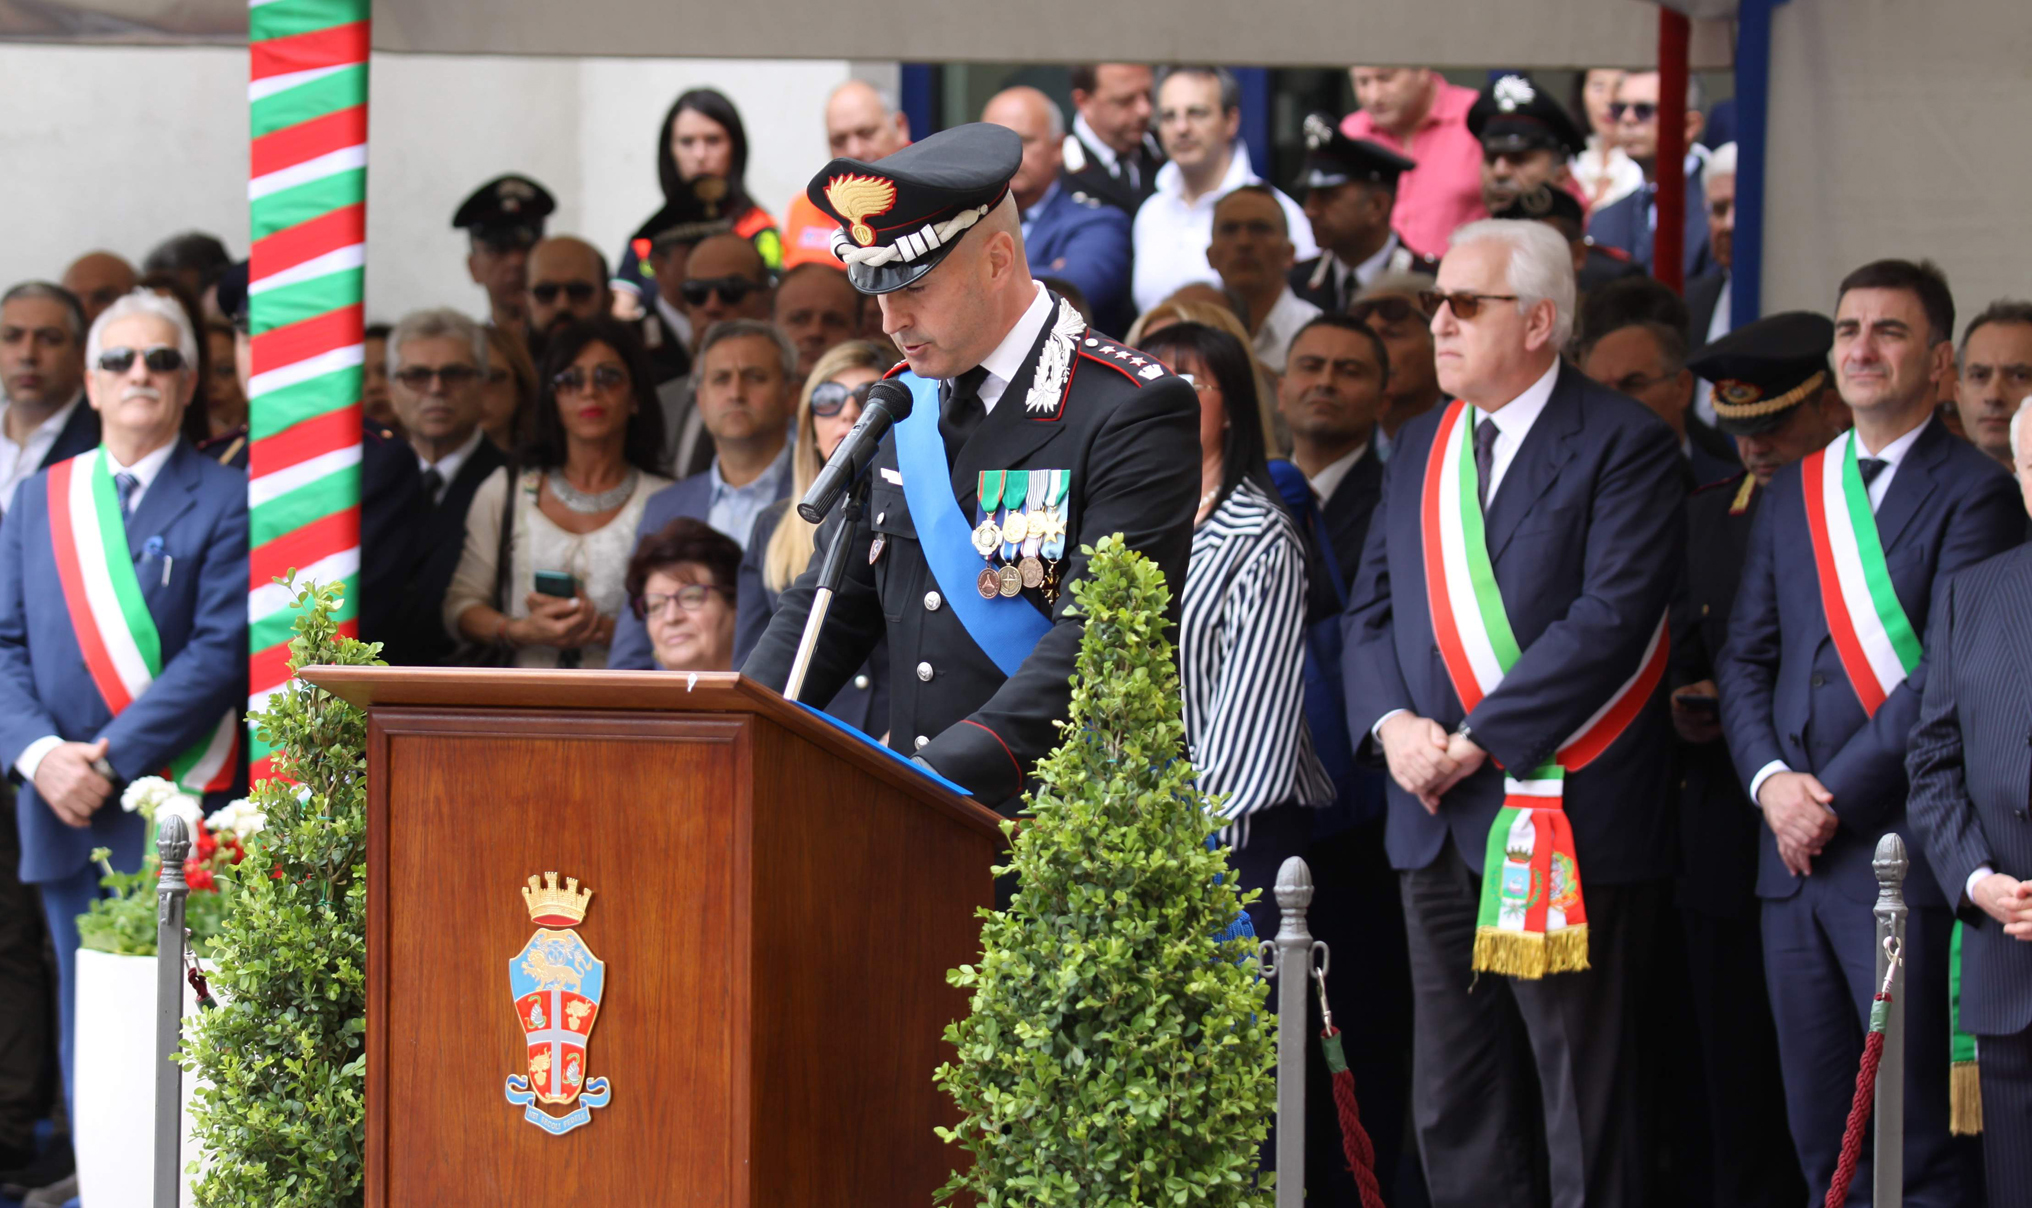 Avellino| Festa dei Carabinieri, Cagnazzo: cittadini primi protagonisti della sicurezza